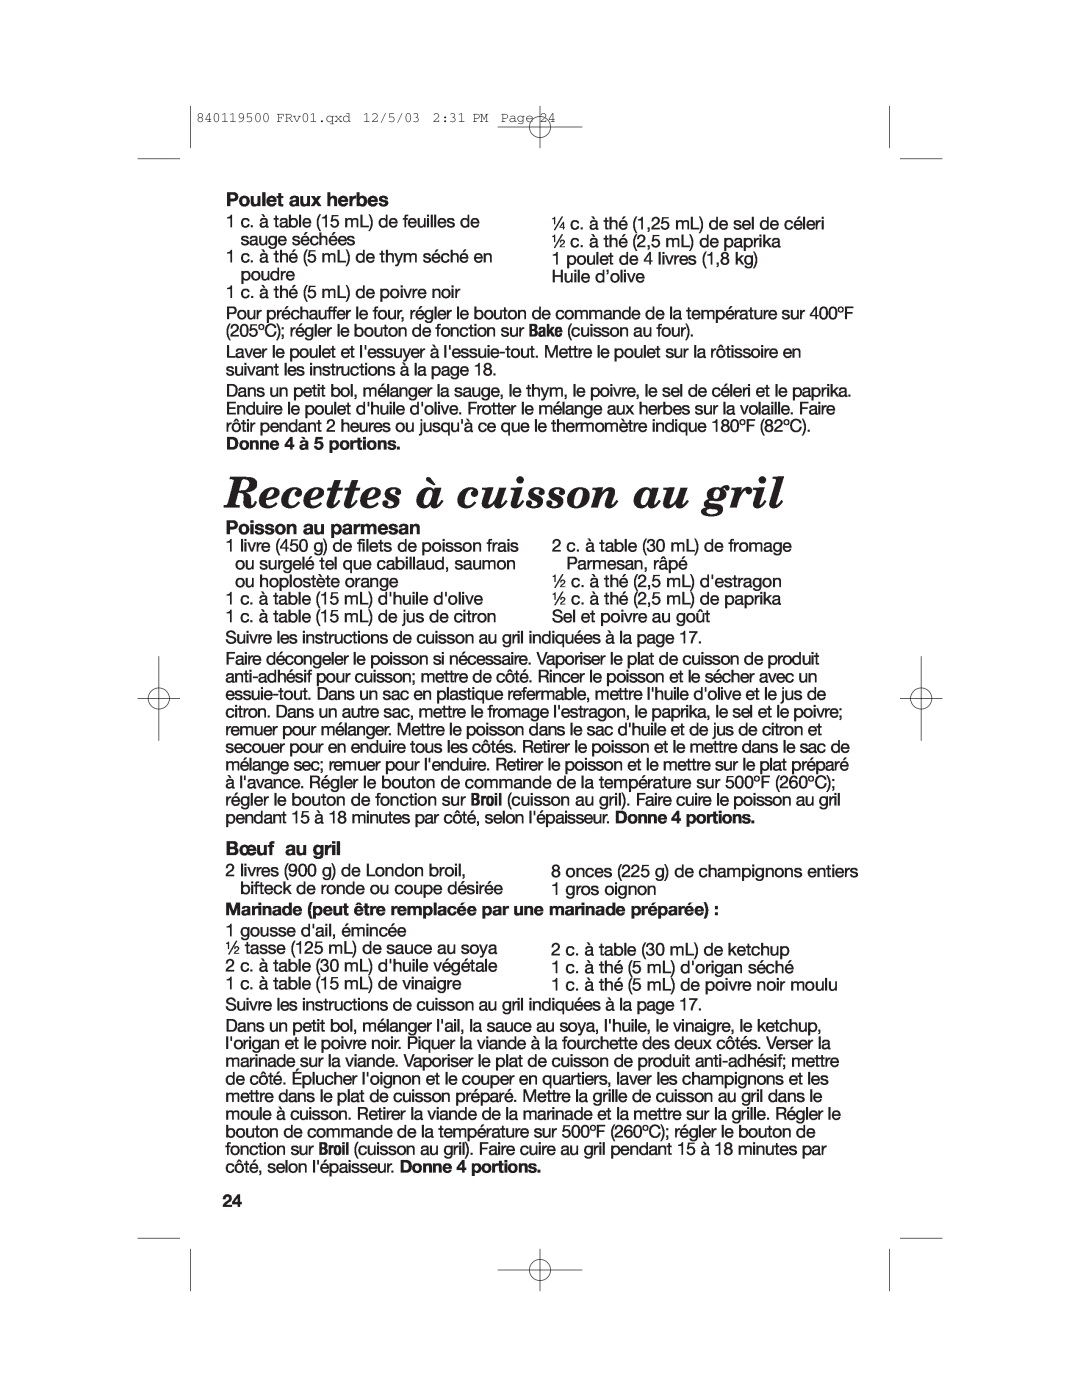 Hamilton Beach 31195 manual Recettes à cuisson au gril, Poulet aux herbes, Poisson au parmesan, Bœuf au gril 